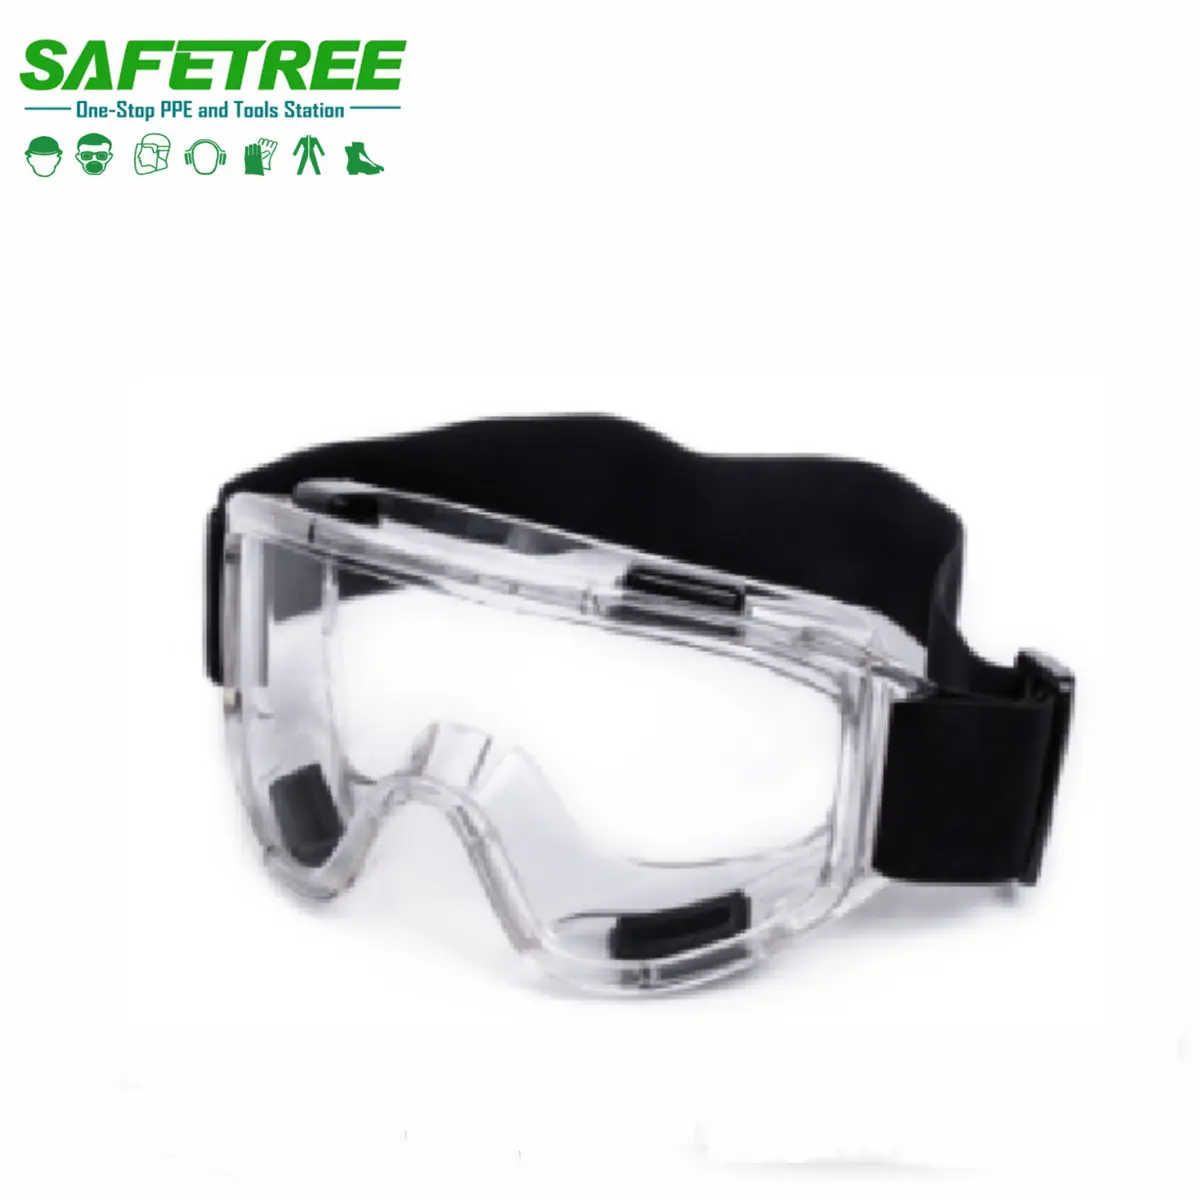 Occhiali di sicurezza a vista completa di sicurezza industriale certificati CE ANSI occhiali di sicurezza protezione UV e antigraffio e antiappannamento con elastico